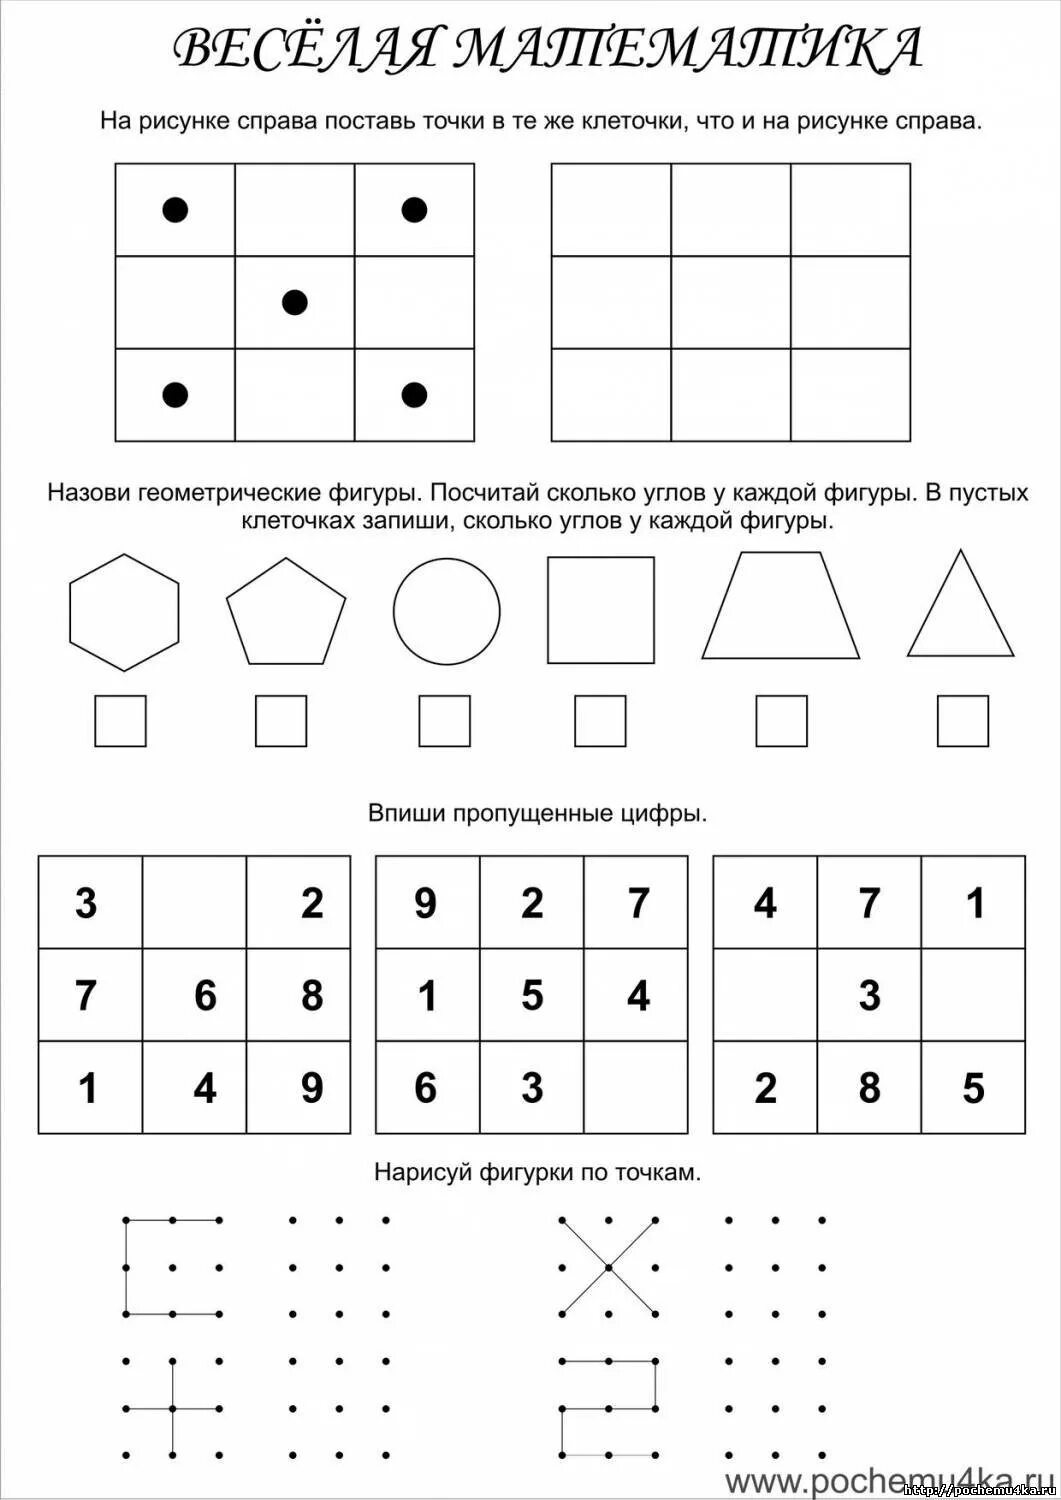 Математические логические задачи для дошкольников 6-7 лет. Занимательные задания по математике для дошкольников. Математика для дошкольников занимательные упражнения. Занимательные математические задания для дошкольников. Задания для подготовительной группы распечатать